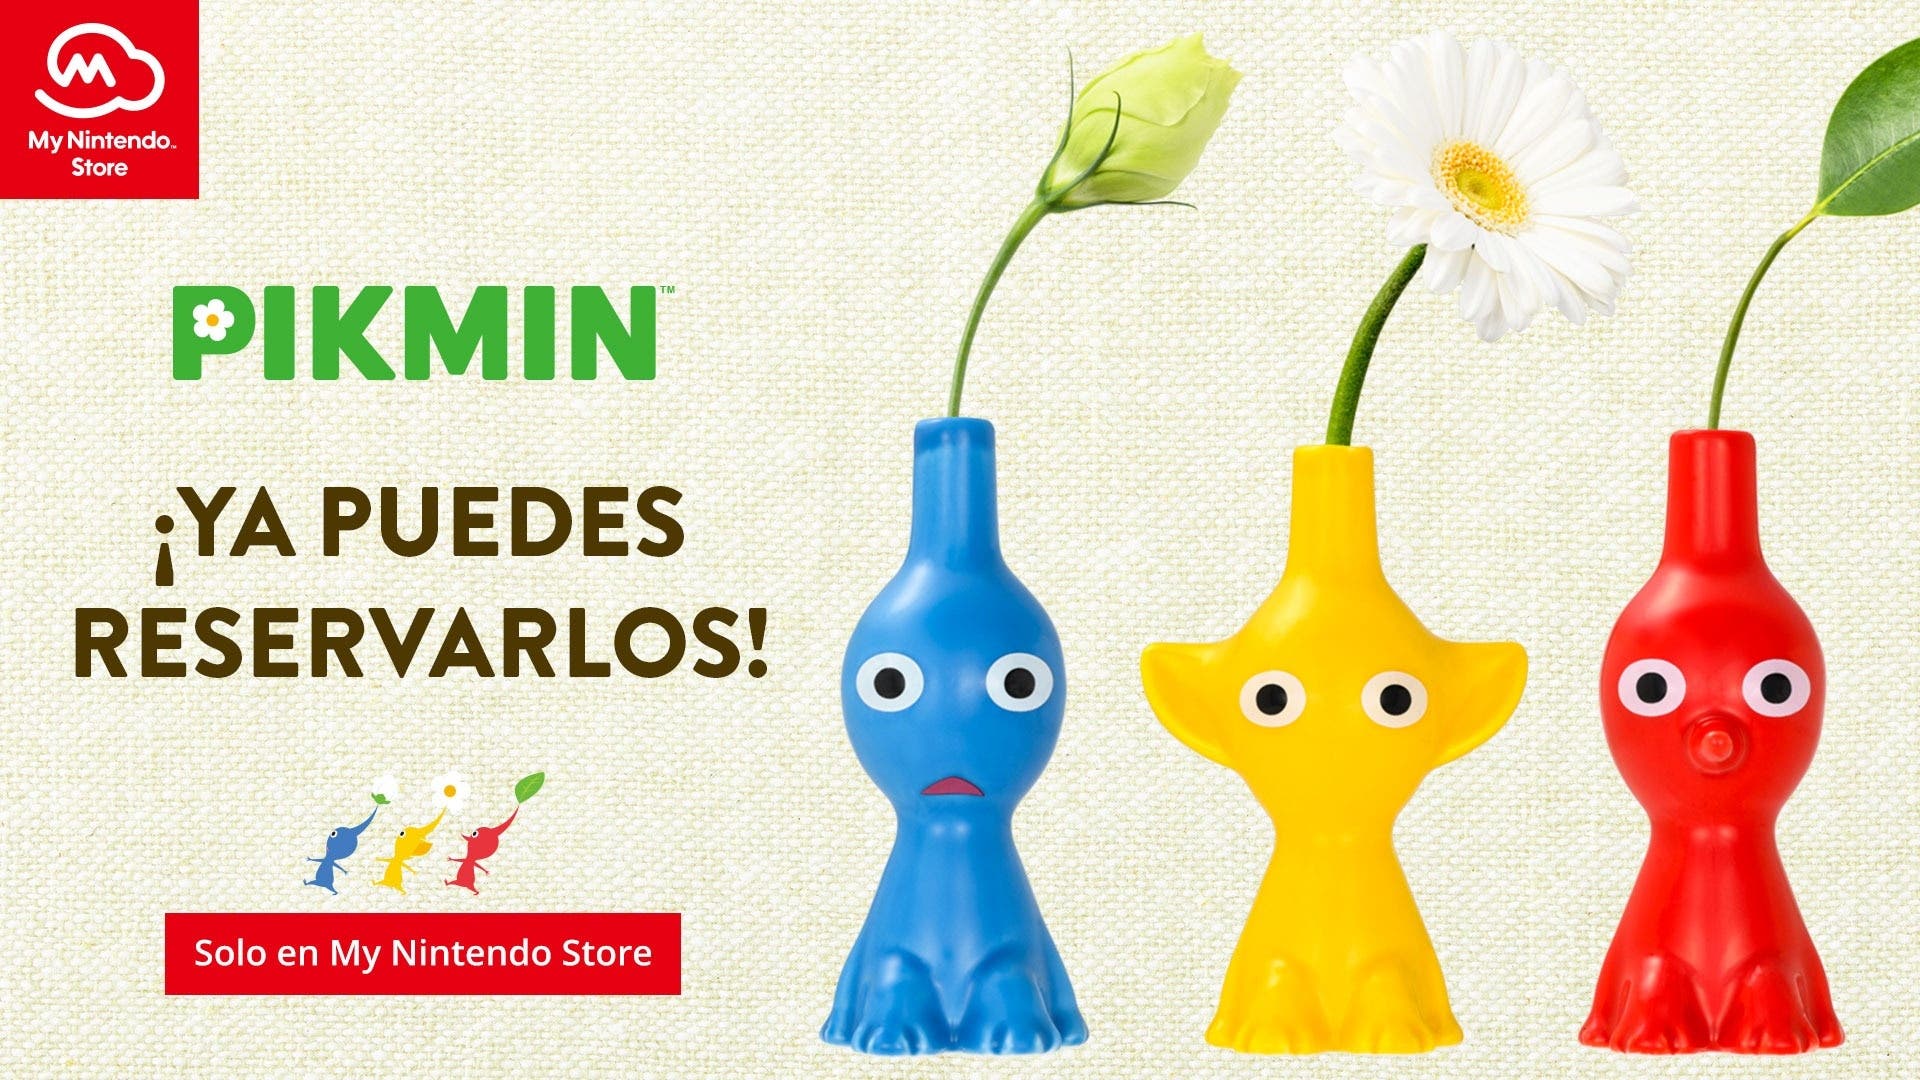 My Nintendo añade estos floreros de Pikmin al catálogo europeo de su Store